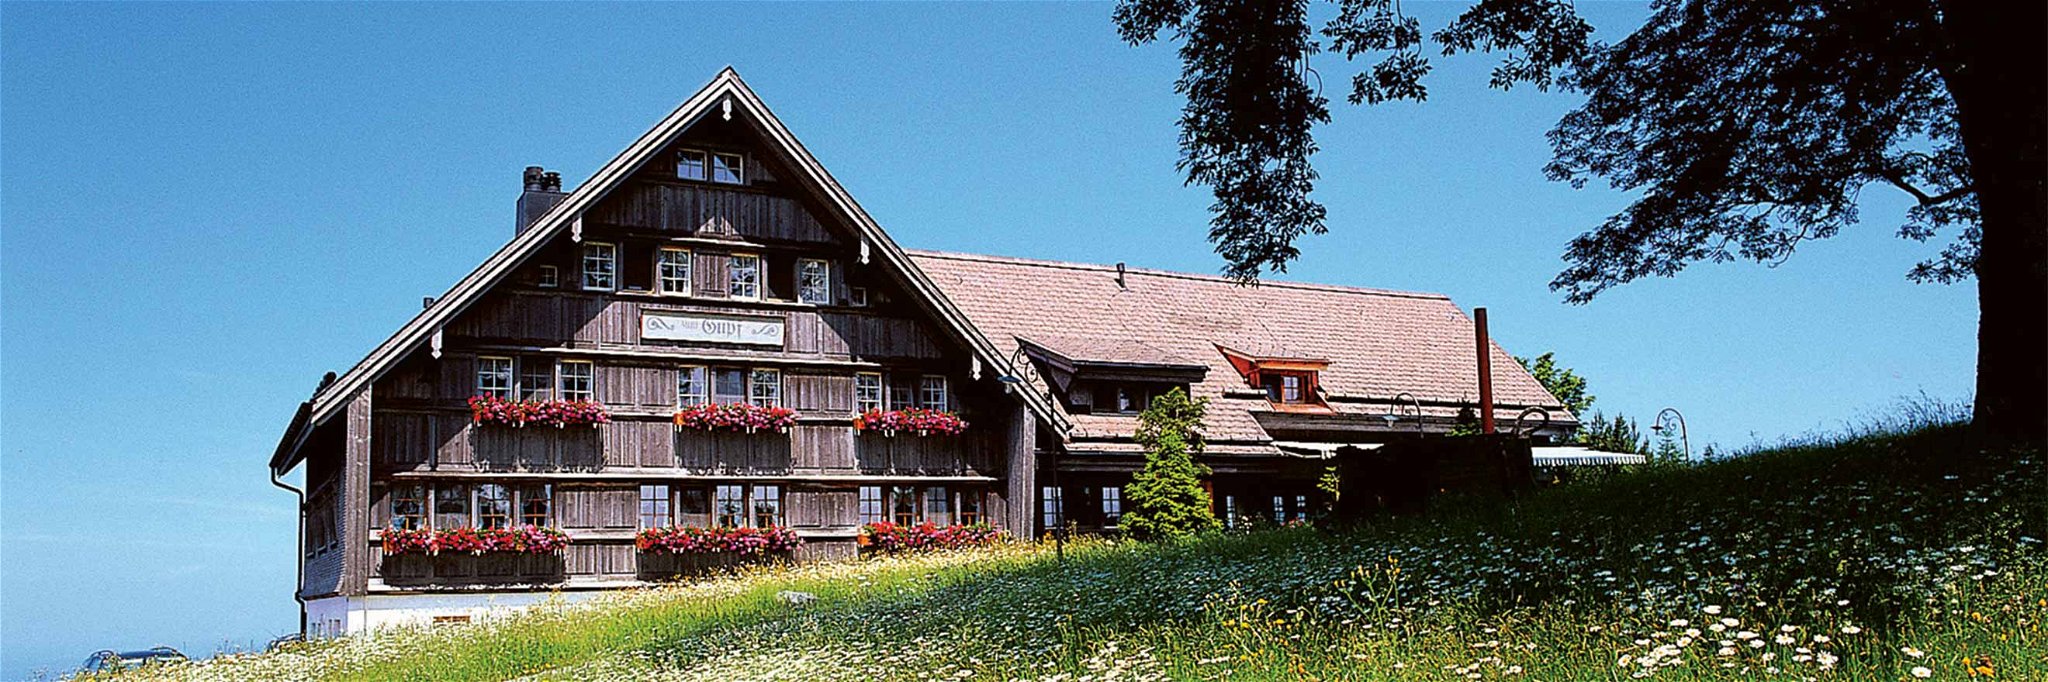 Magnet für Feinschmecker aus nah und fern: Das «Gasthaus zum Gupf» im kleinen Dorf Rehetobel.